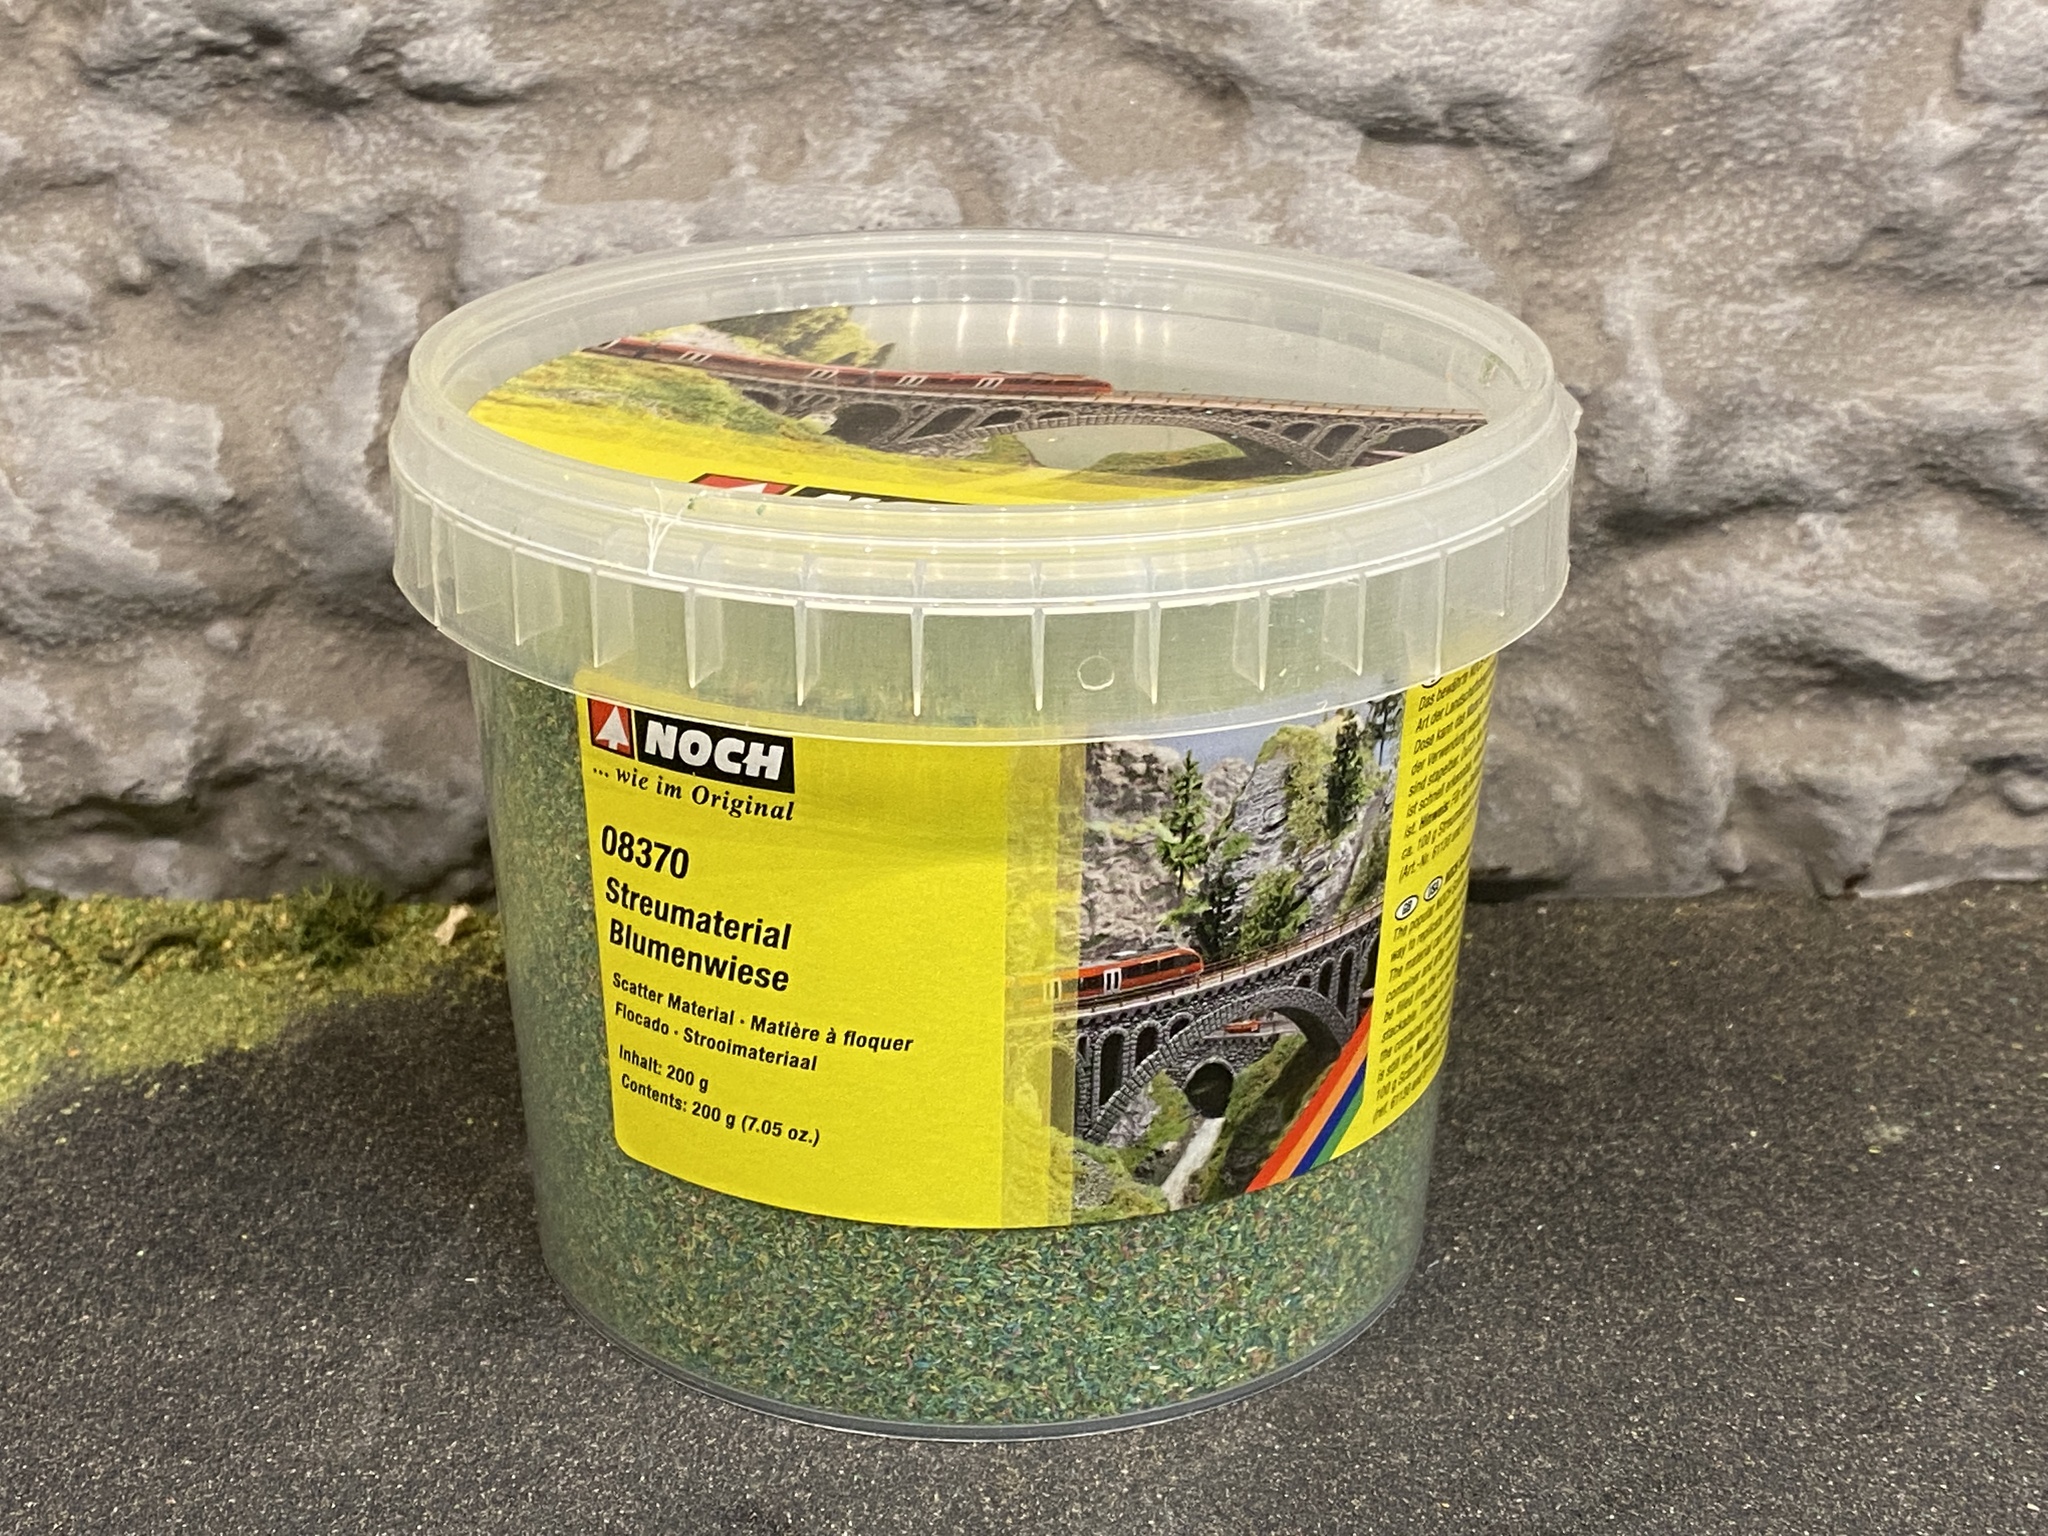 NOCH 07095 XL Realistiskt ljus grön vild gräs äng 12mm 80 gram